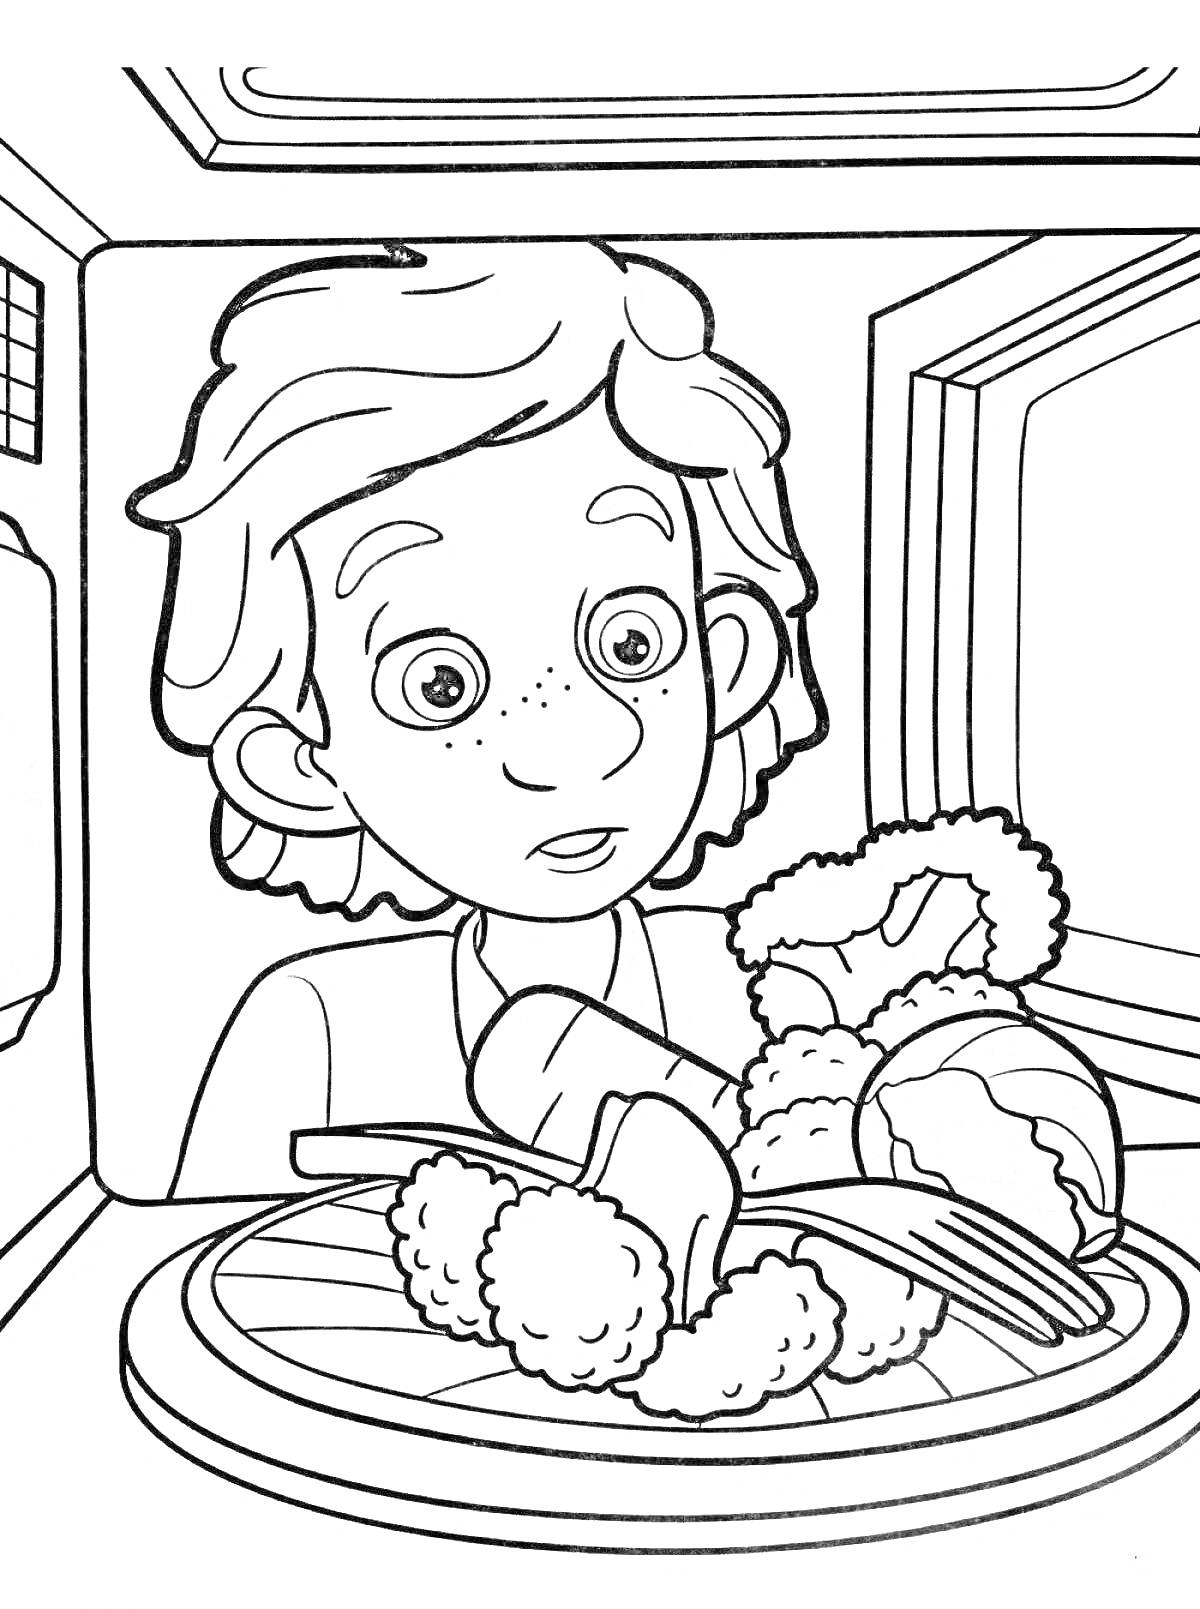 Мальчик смотрит на тарелку с едой, включая куриные ножки и овощи